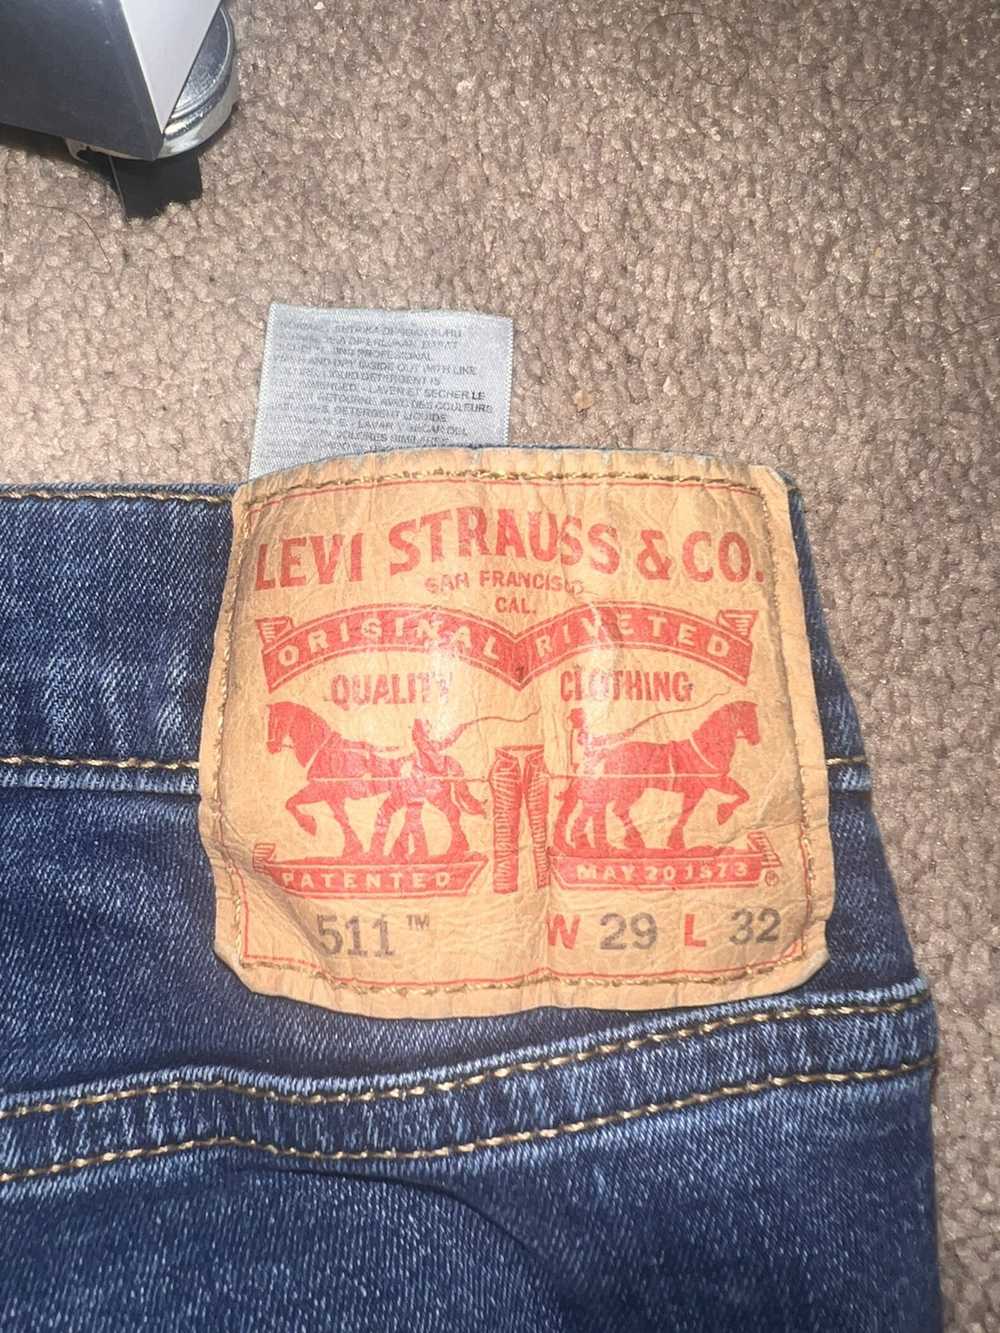 Levi's Levi’s 511 jeans - image 3